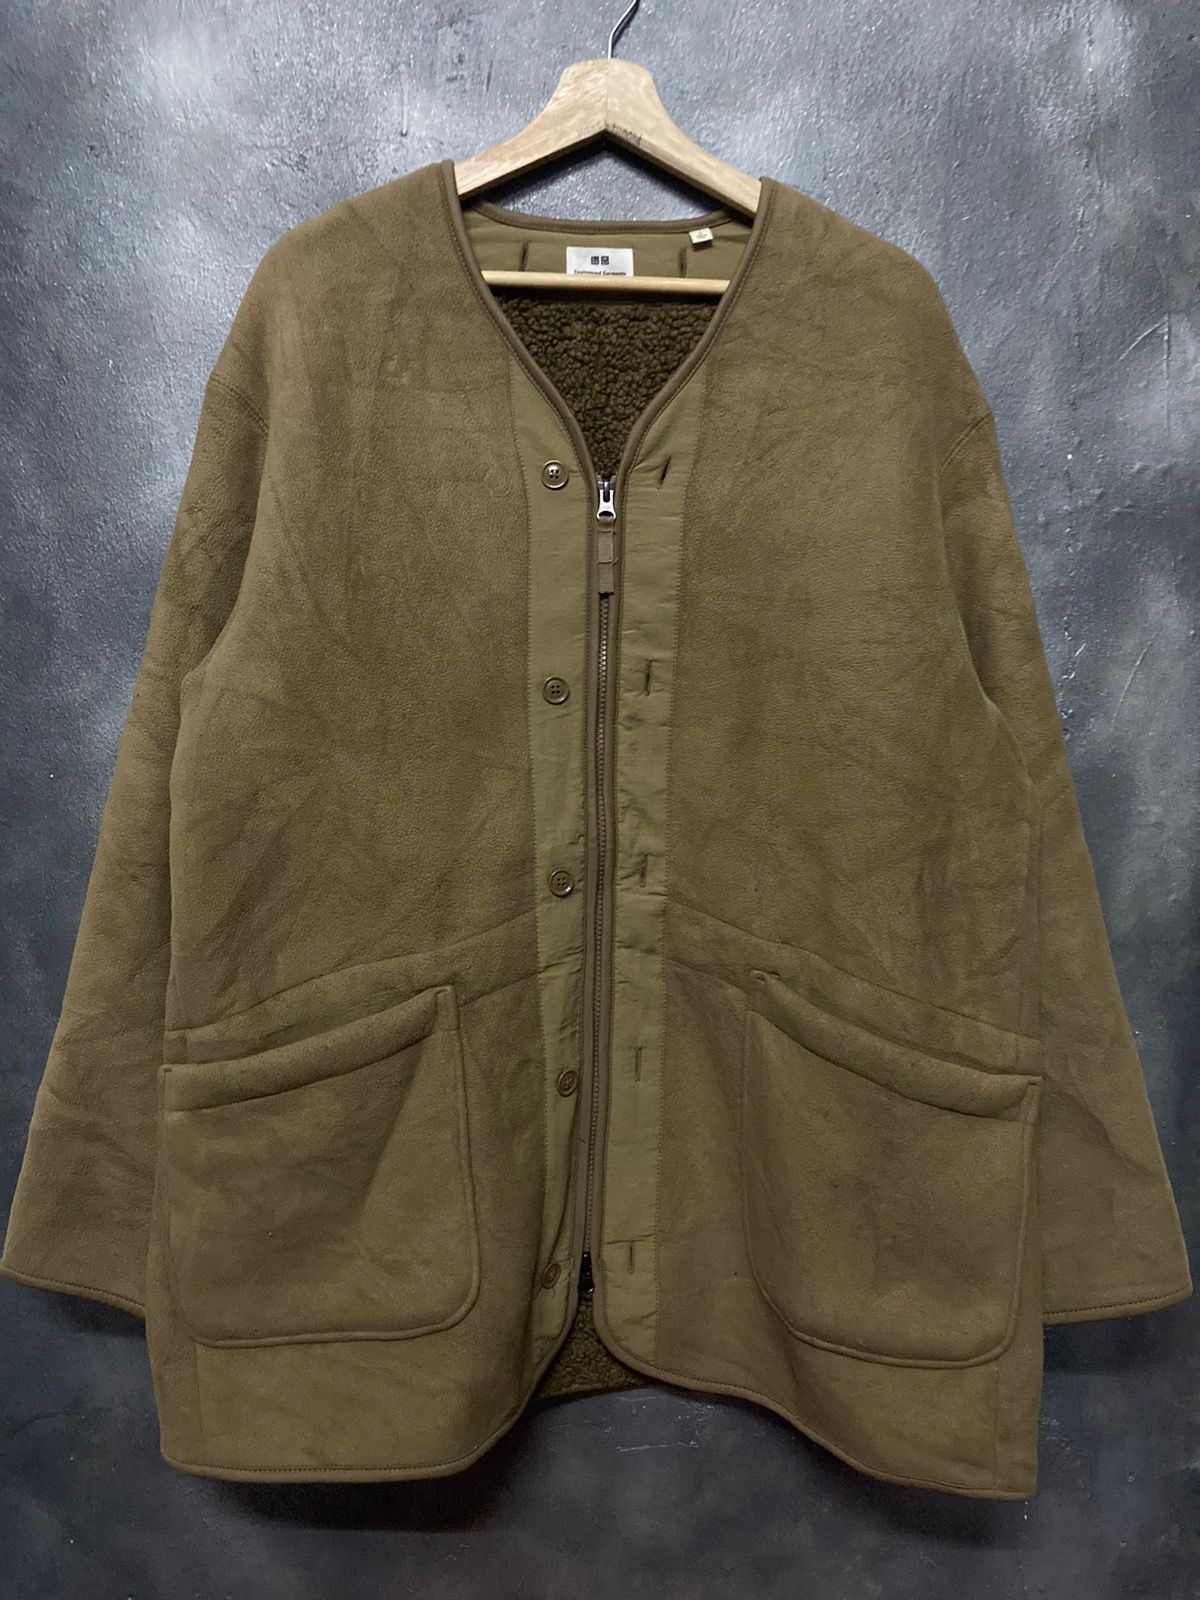 Engineered Garments Uniqlo Fleece Jacket - 5